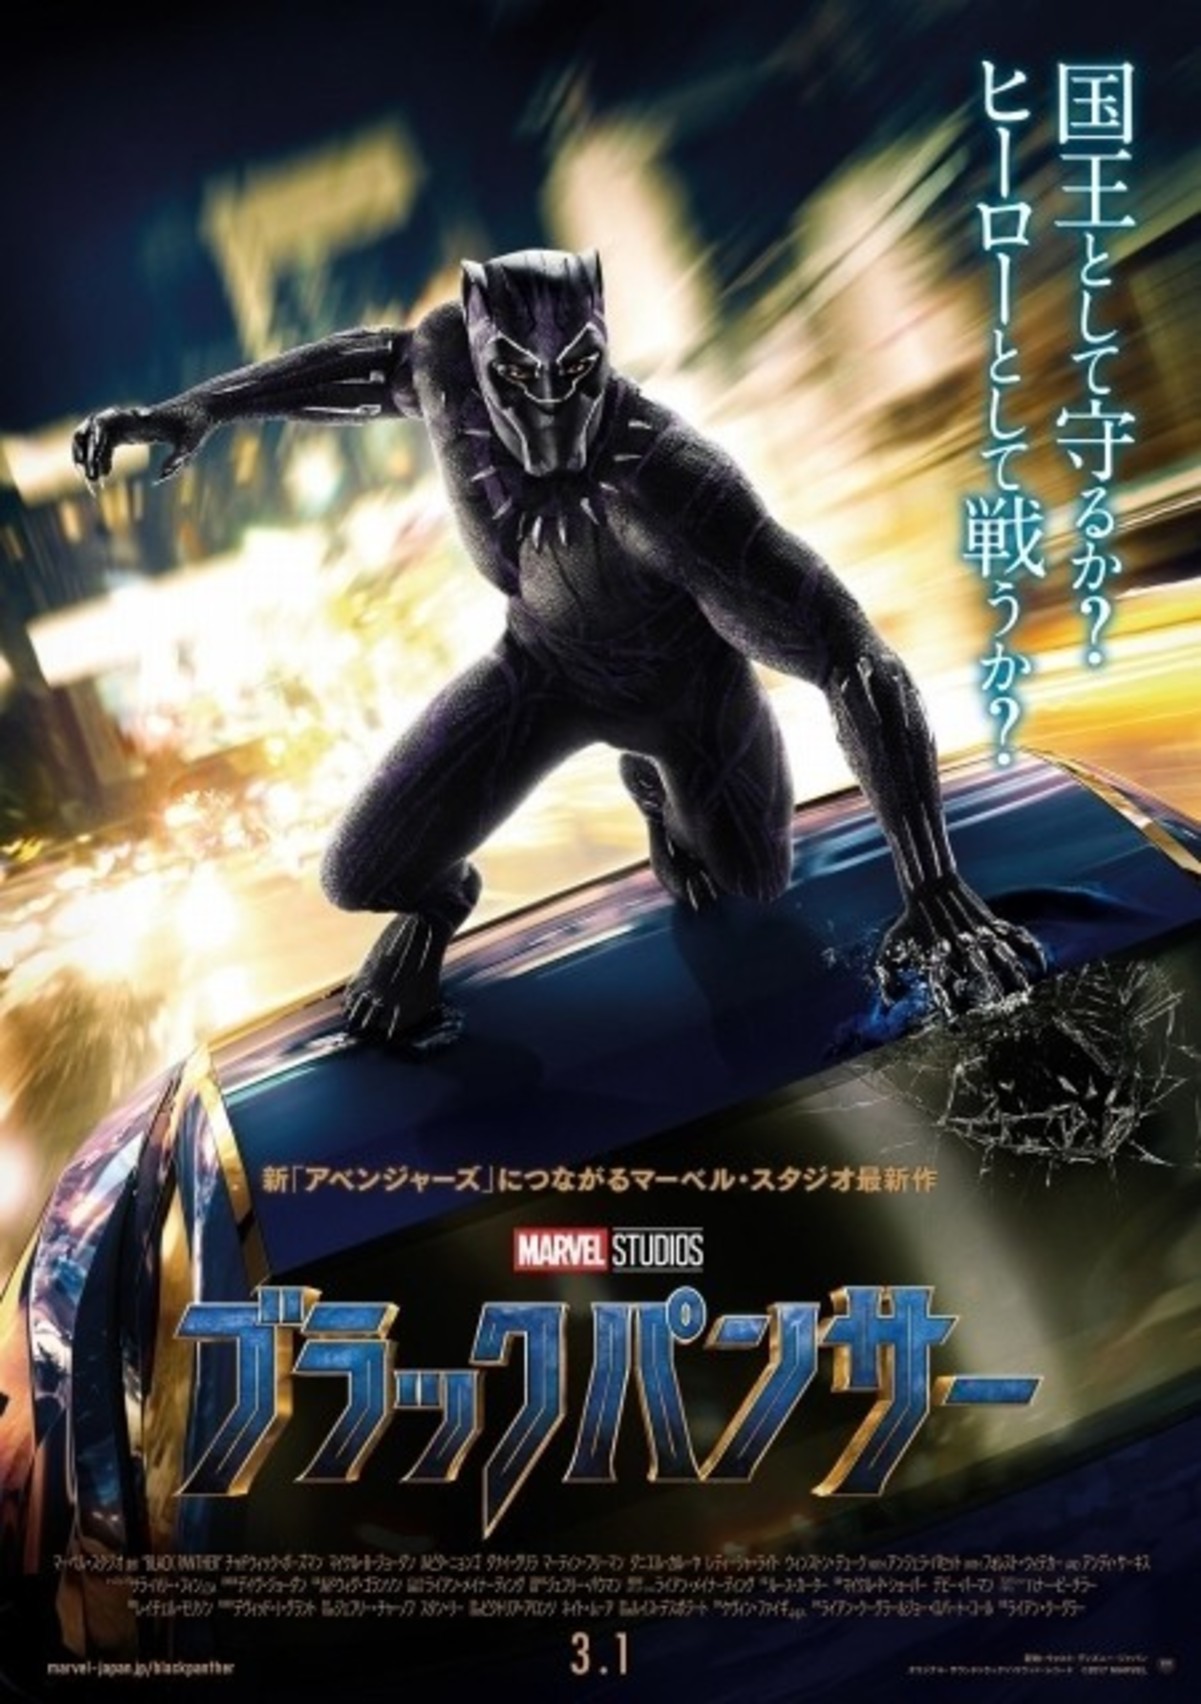 アベンジャーズの新たな仲間 ブラックパンサーが躍動 日本版ポスター公開 映画ニュース 映画 Com